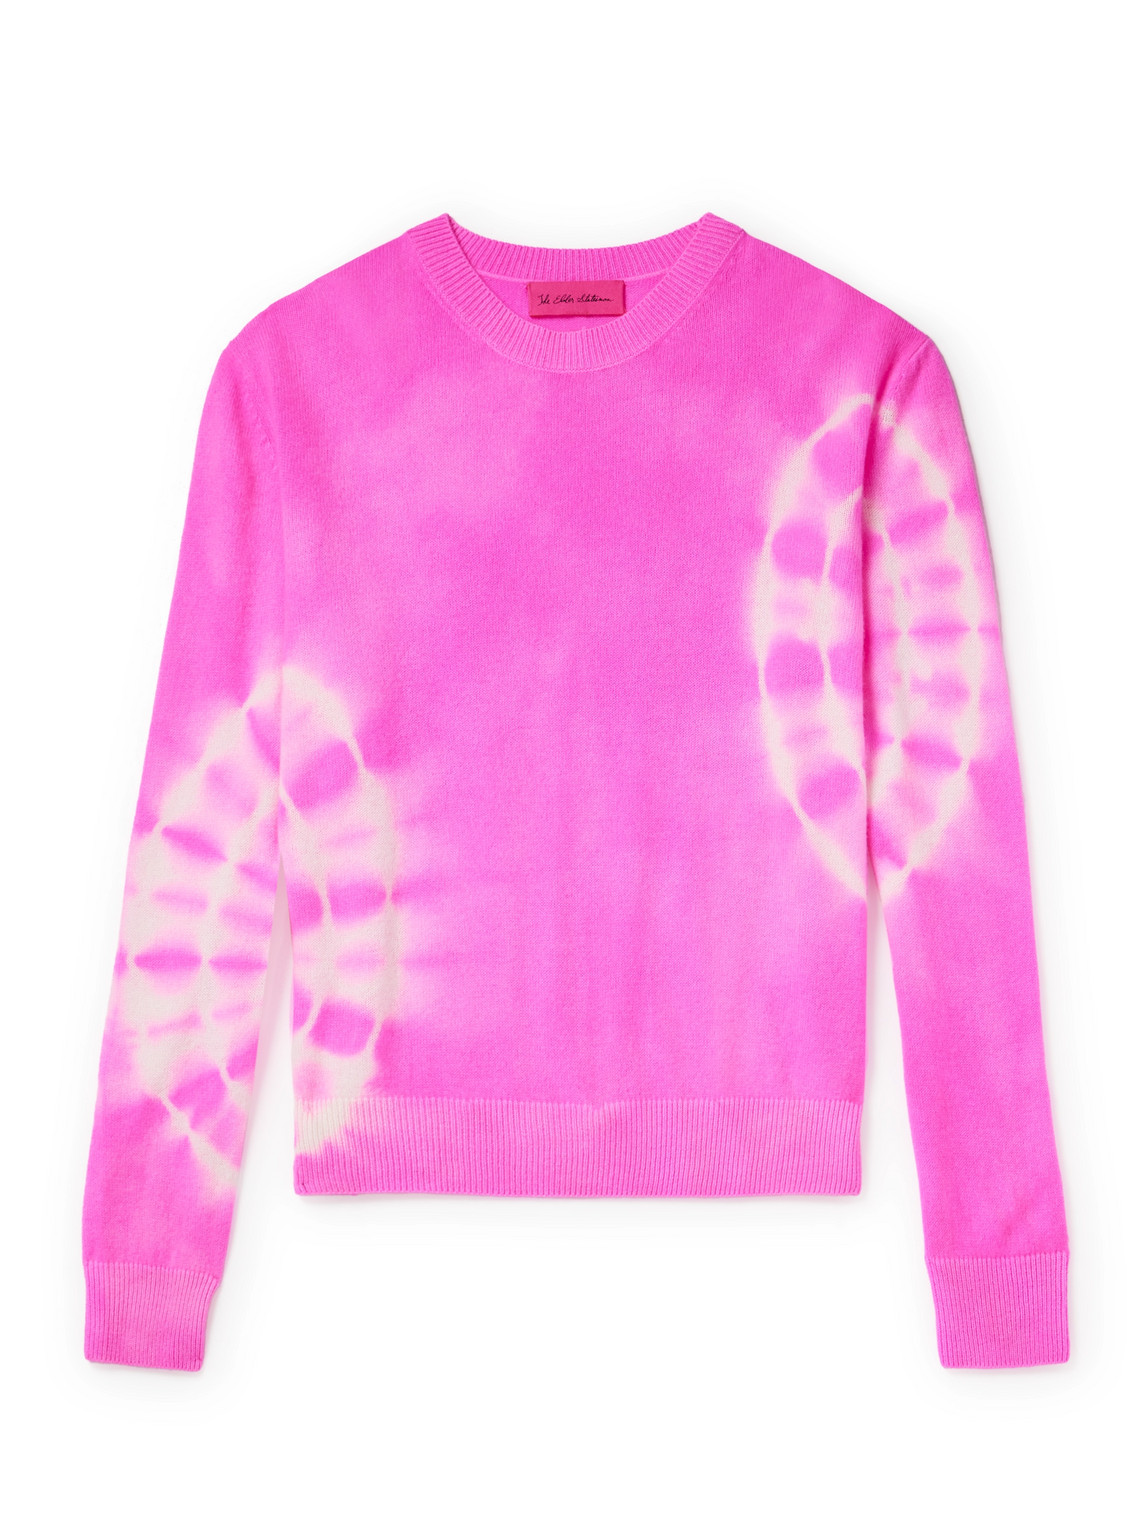 The Elder Statesman - Spiral City Tranquility Tie-Dyed Cashmere Sweater - Men - Pink - XS von The Elder Statesman